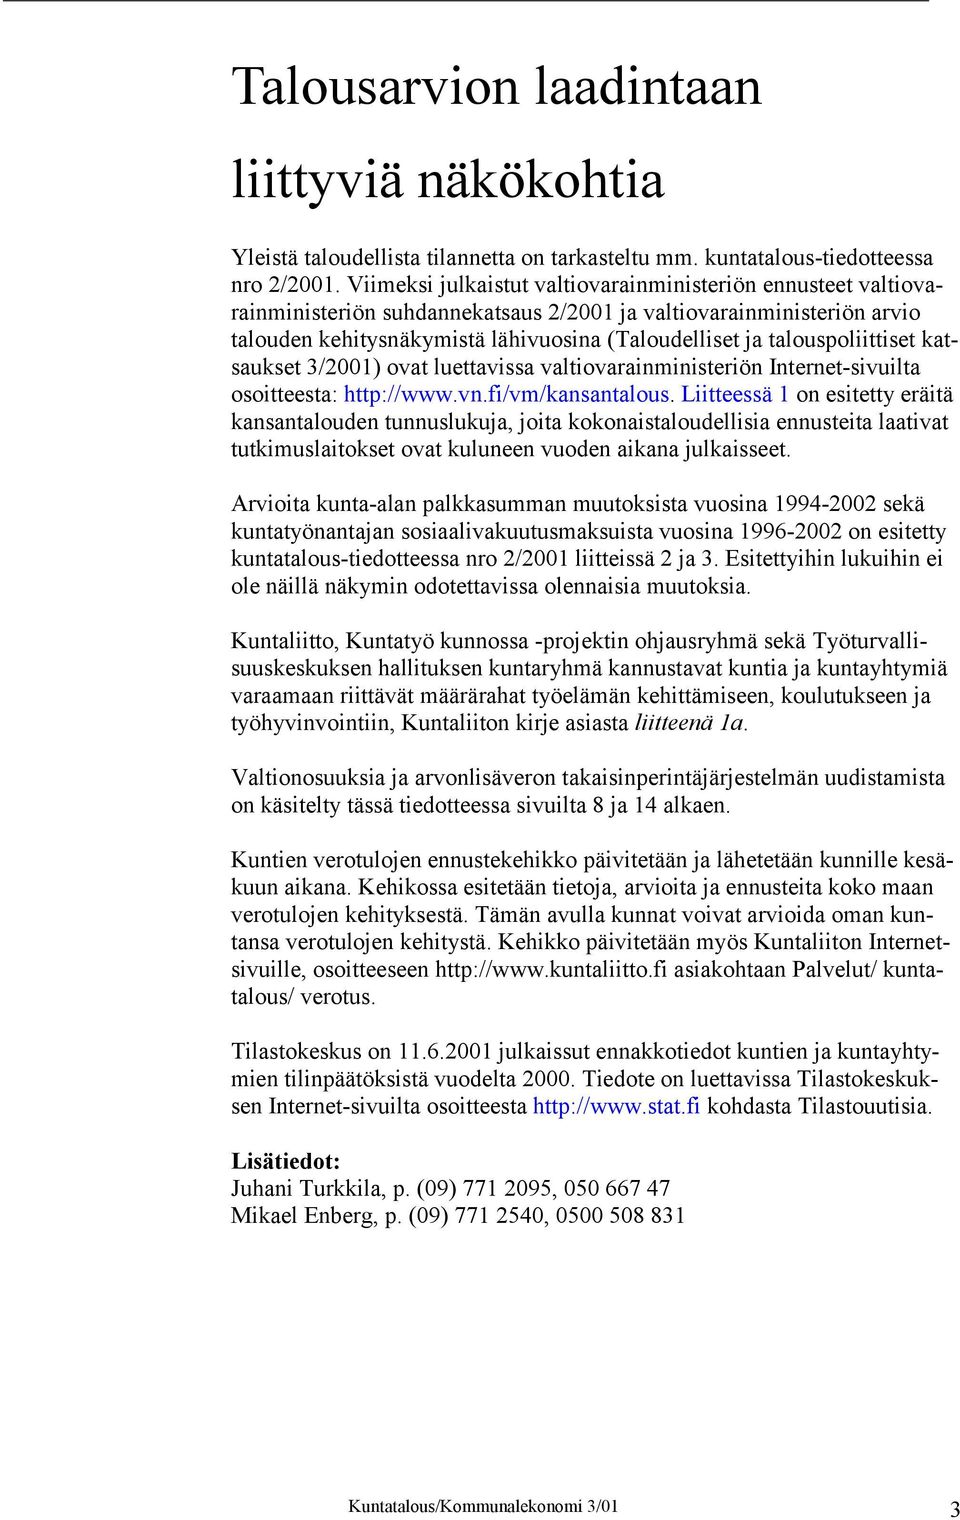 talouspoliittiset katsaukset 3/2001) ovat luettavissa valtiovarainministeriön Internet-sivuilta osoitteesta: http://www.vn.fi/vm/kansantalous.